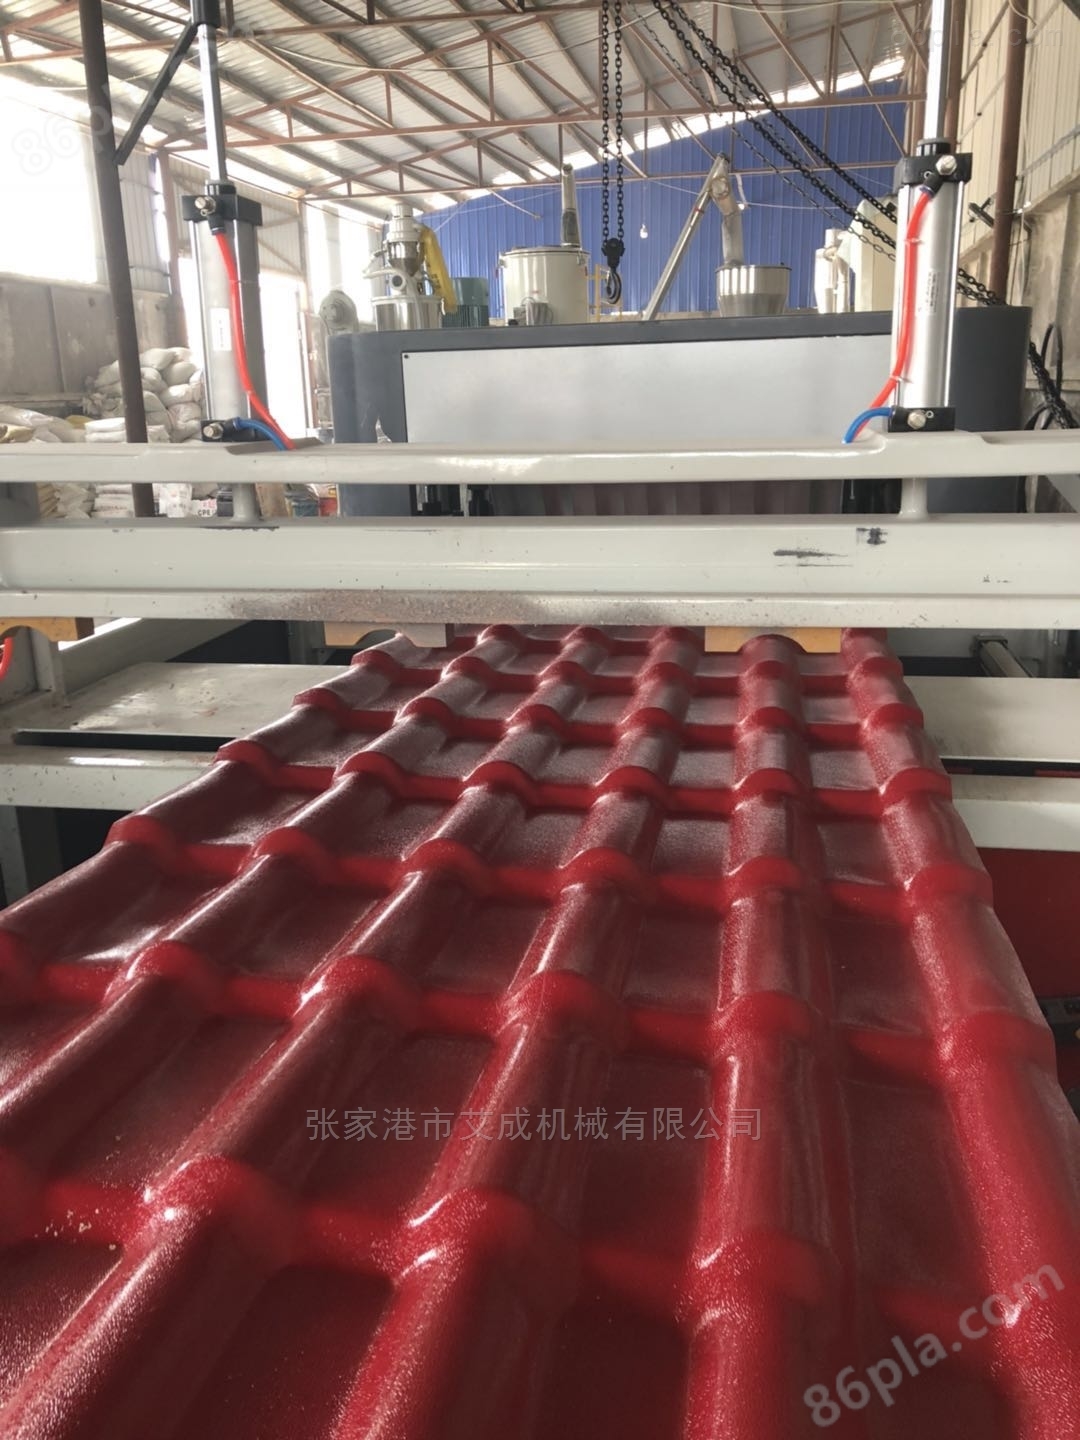 张家港树脂瓦设备生产厂家 琉璃瓦生产线